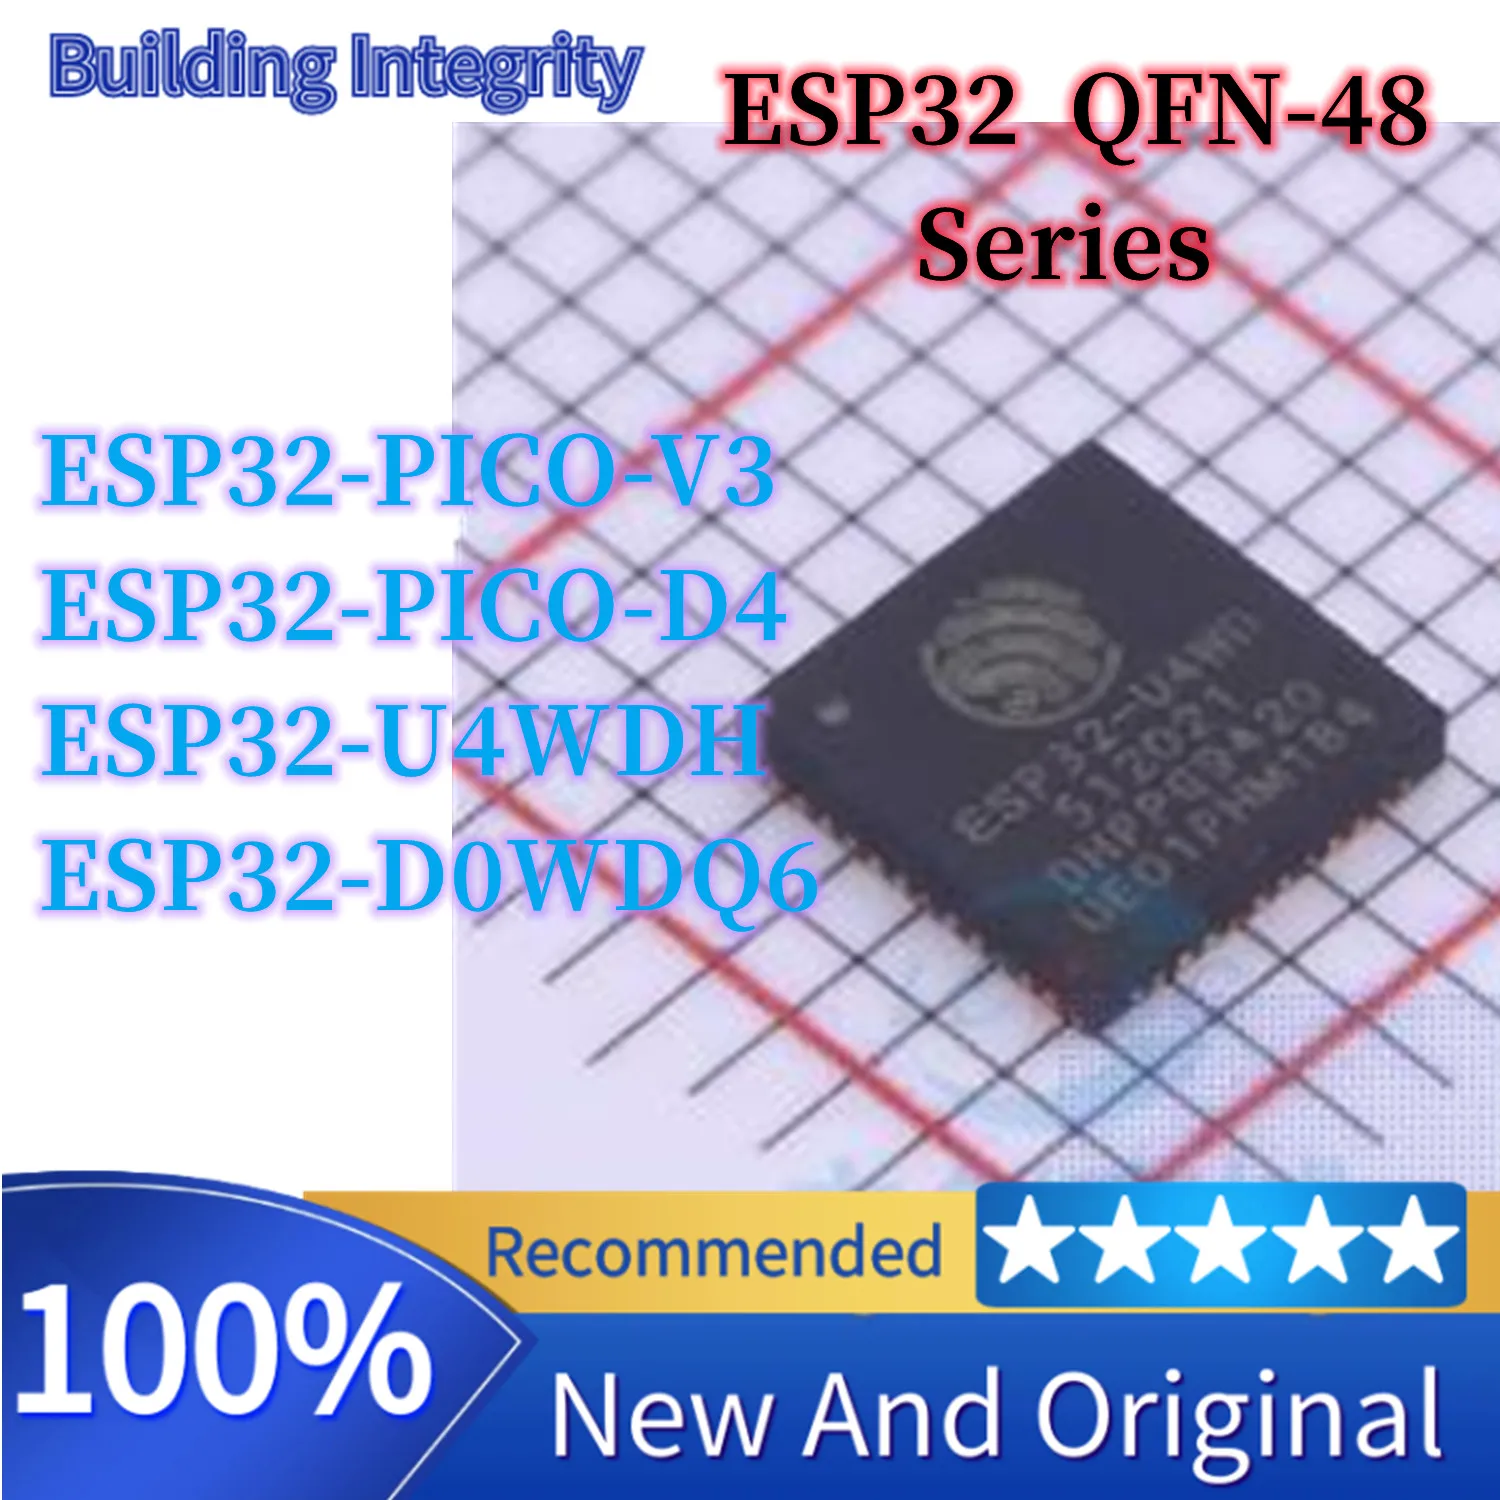 ESP32-U4WDH ESP32-D0WDQ6 ESP32-PICO-D4 ESP32-PICO-V3 Paketo QFN-48 Naują Originalus Autentiškas Belaidžio Transiveris IC Chip Nuotrauka 0